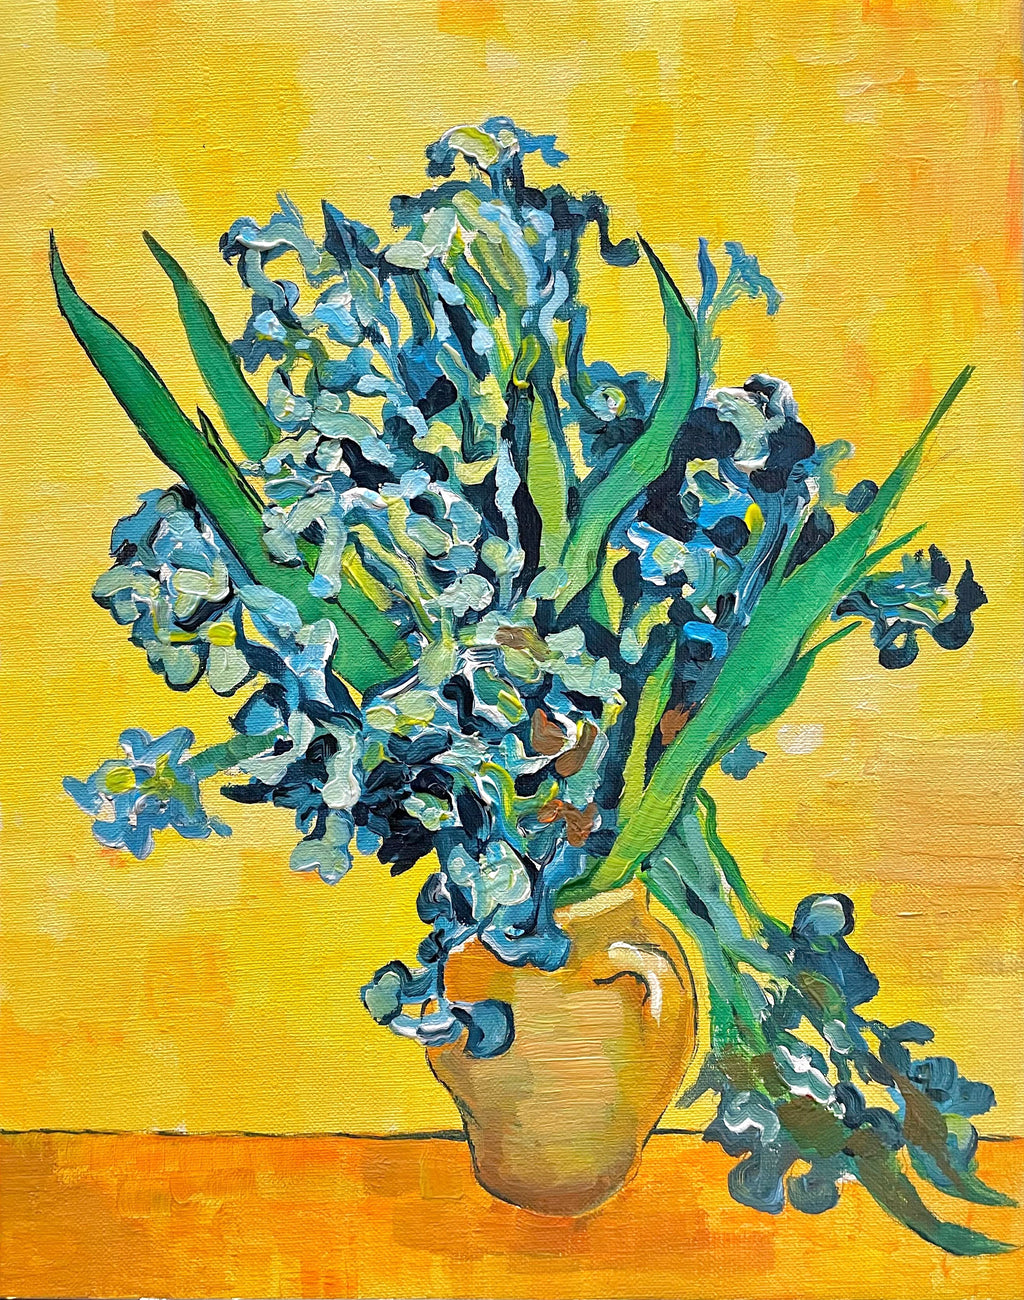 【日本橋】5月6日 (月祝) 14:00-17:00 | フィンセント・ファン・ゴッホ | アイリス *下描きあり (Irises by Vincent van Gogh *canvas drafted at Nihon-bashi)